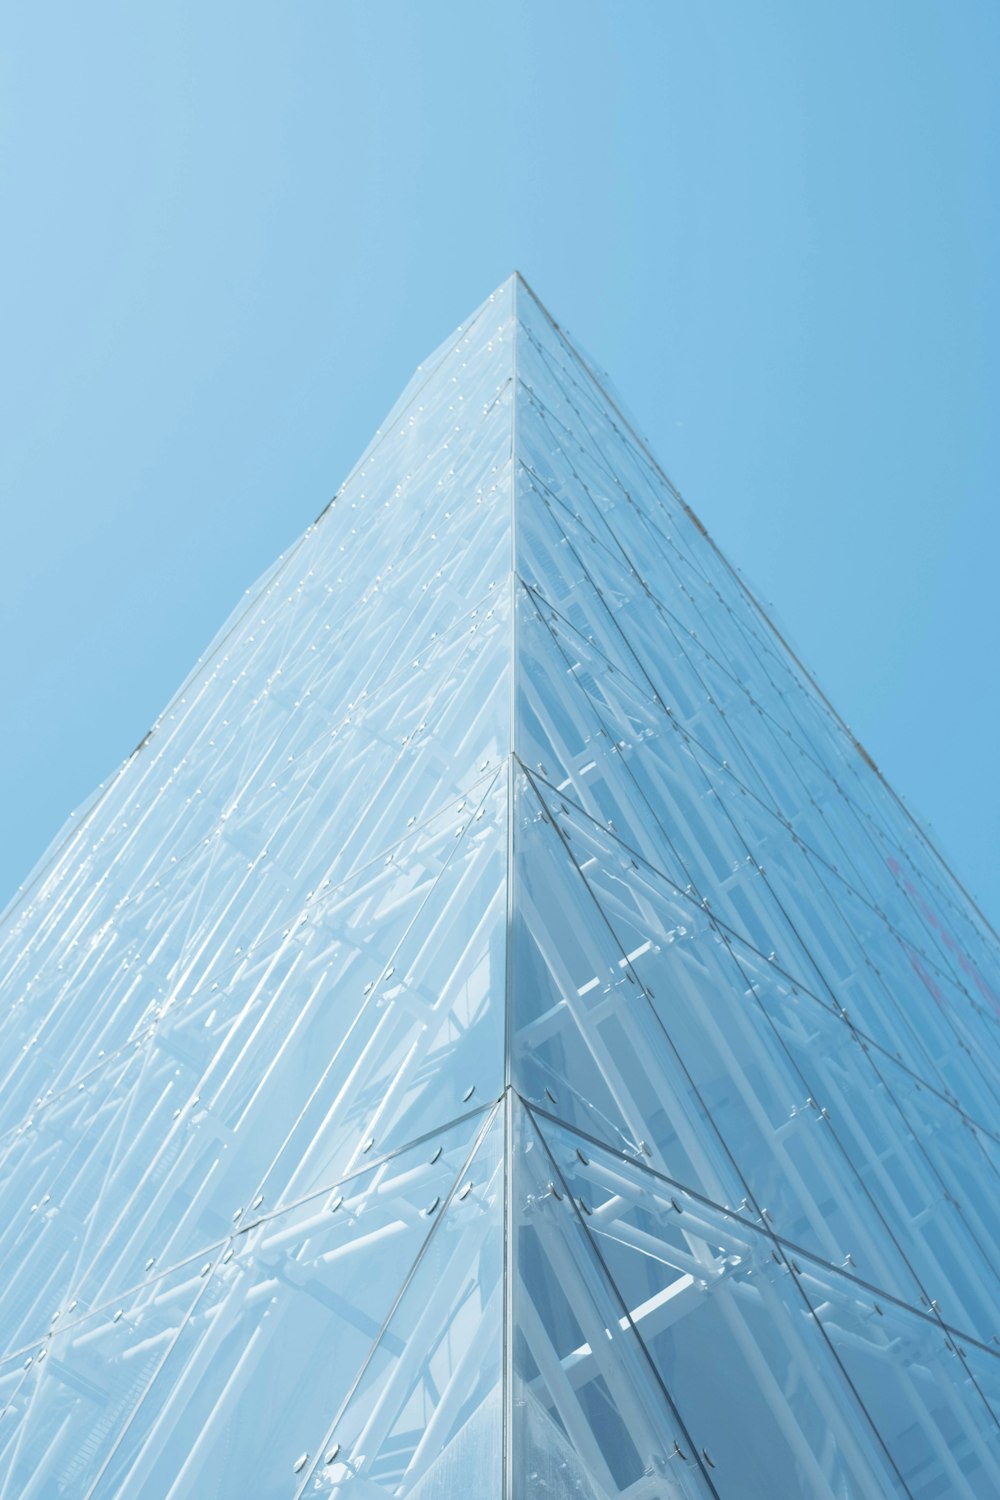 edificio piramidale in vetro trasparente